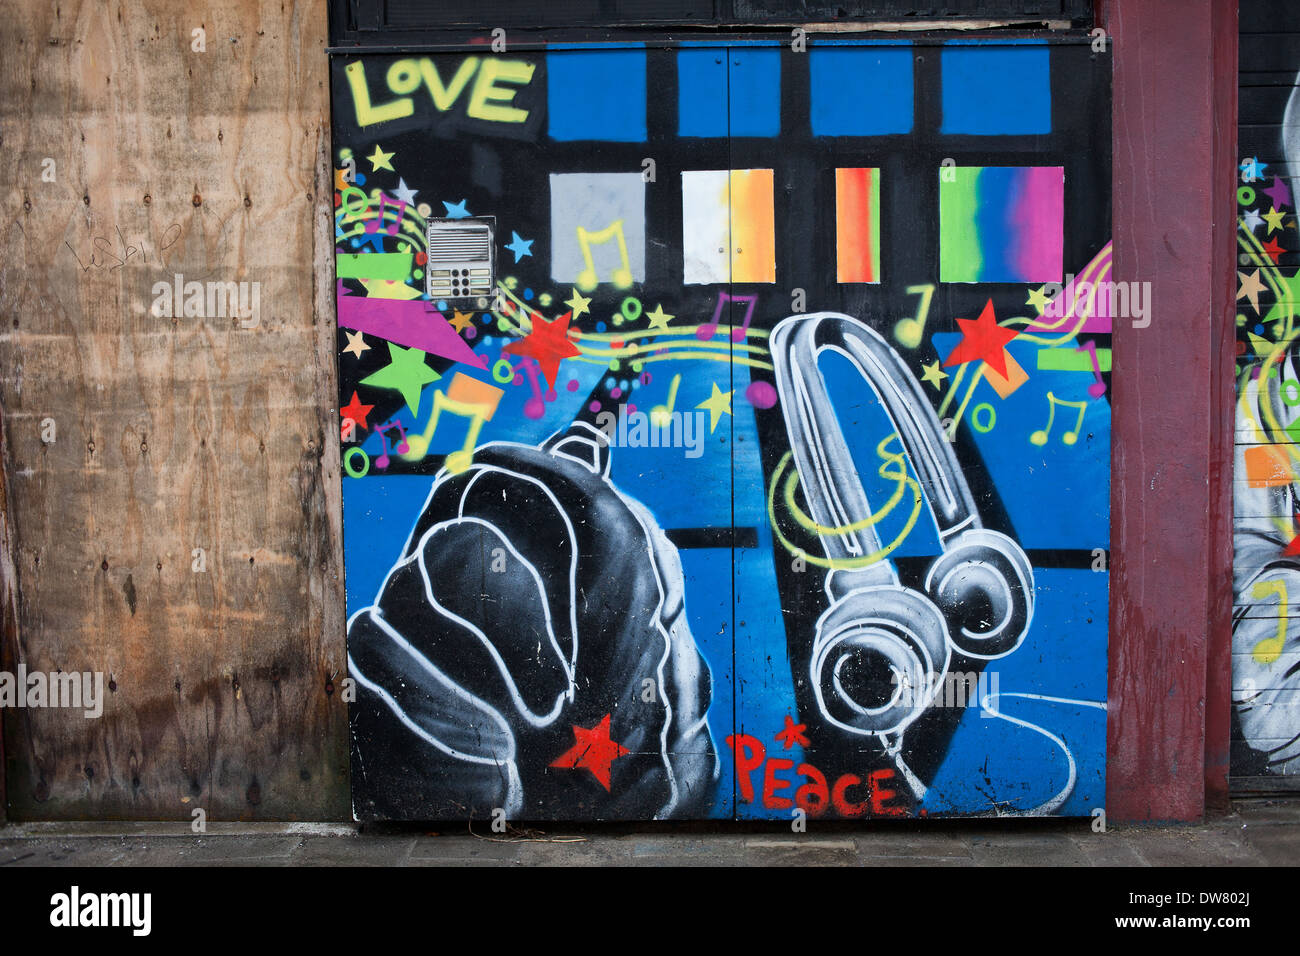 Graffiti auf Garagentoren mit Liebe, Frieden und Musik Thema, Street Art in Rotterdam, Holland, Niederlande. Stockfoto